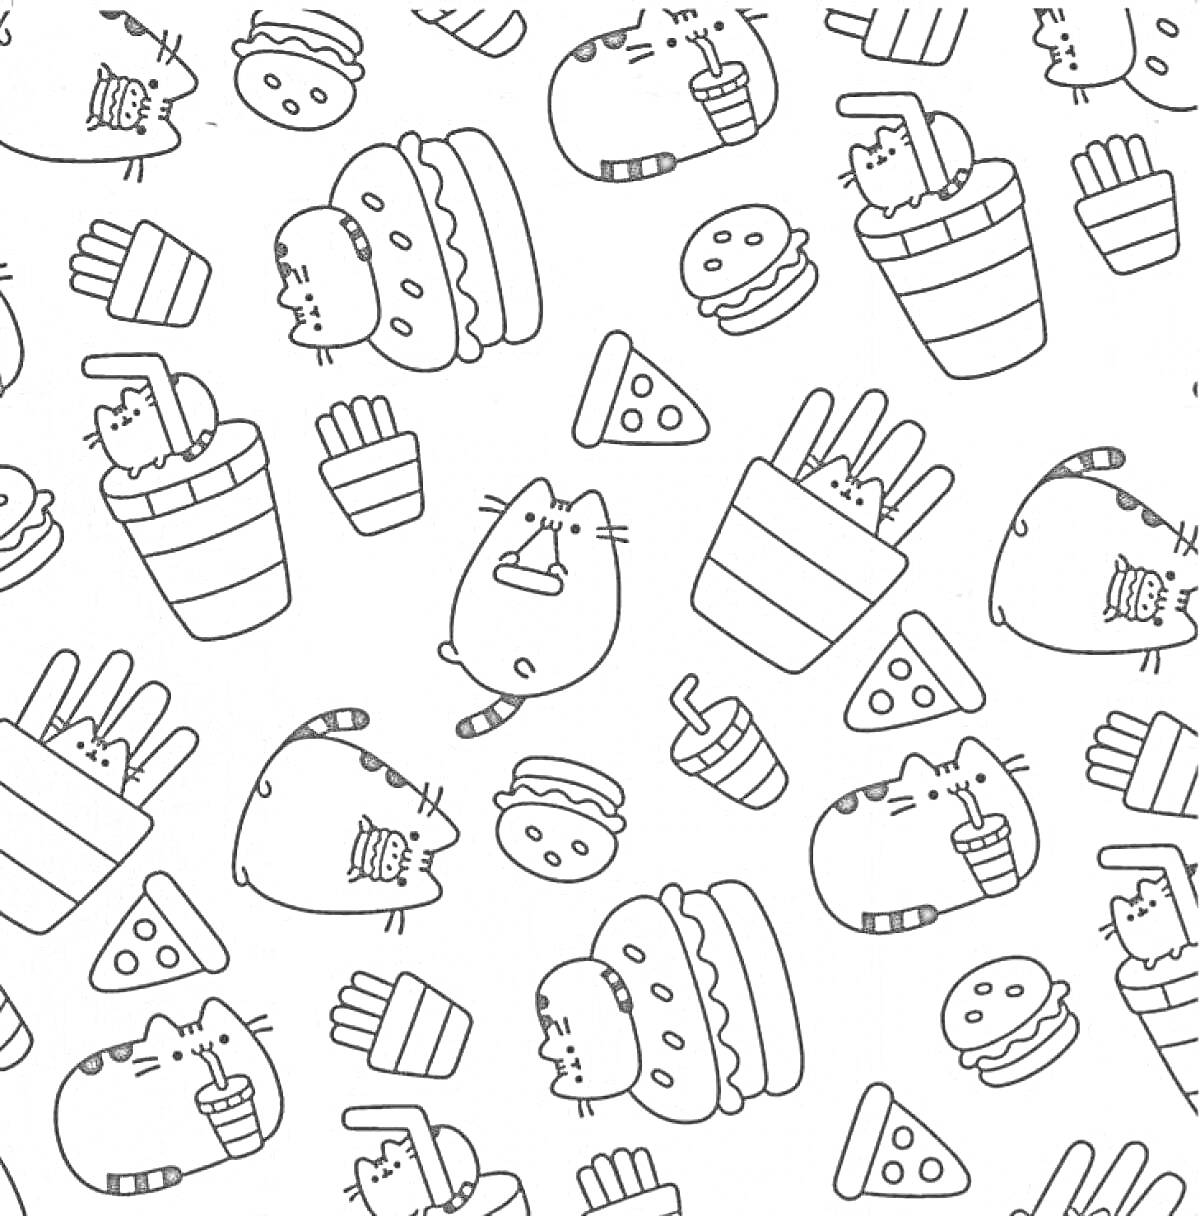 Раскраска Котики и фастфуд: коты в чашках с напитком, гамбургерах и порциях картофеля фри, кусочки пиццы, гамбургеры и картофель фри